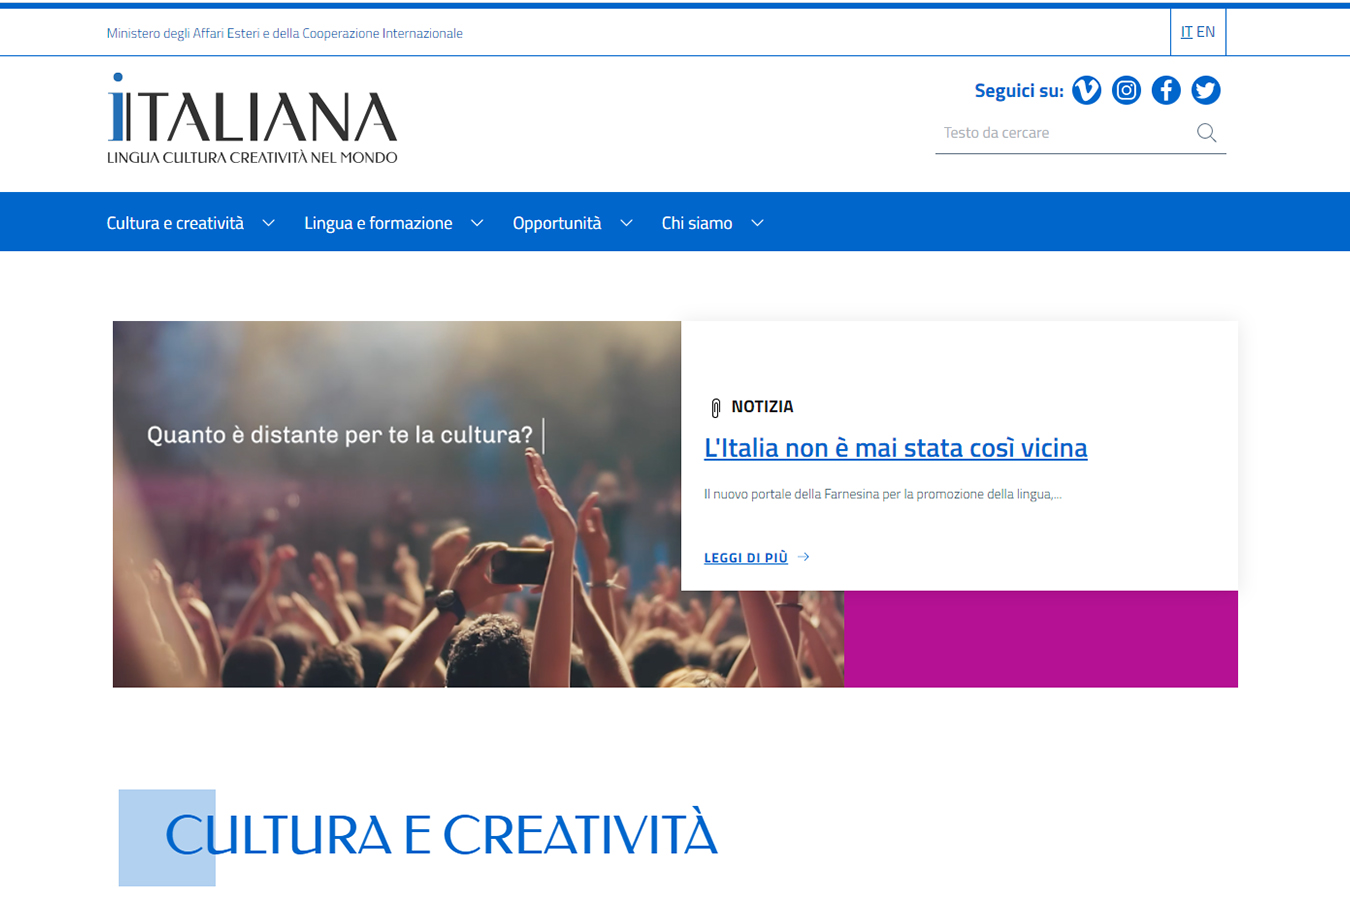 A Year with Sciascia – Italiana – Lingua, cultura, creatività nel mondo